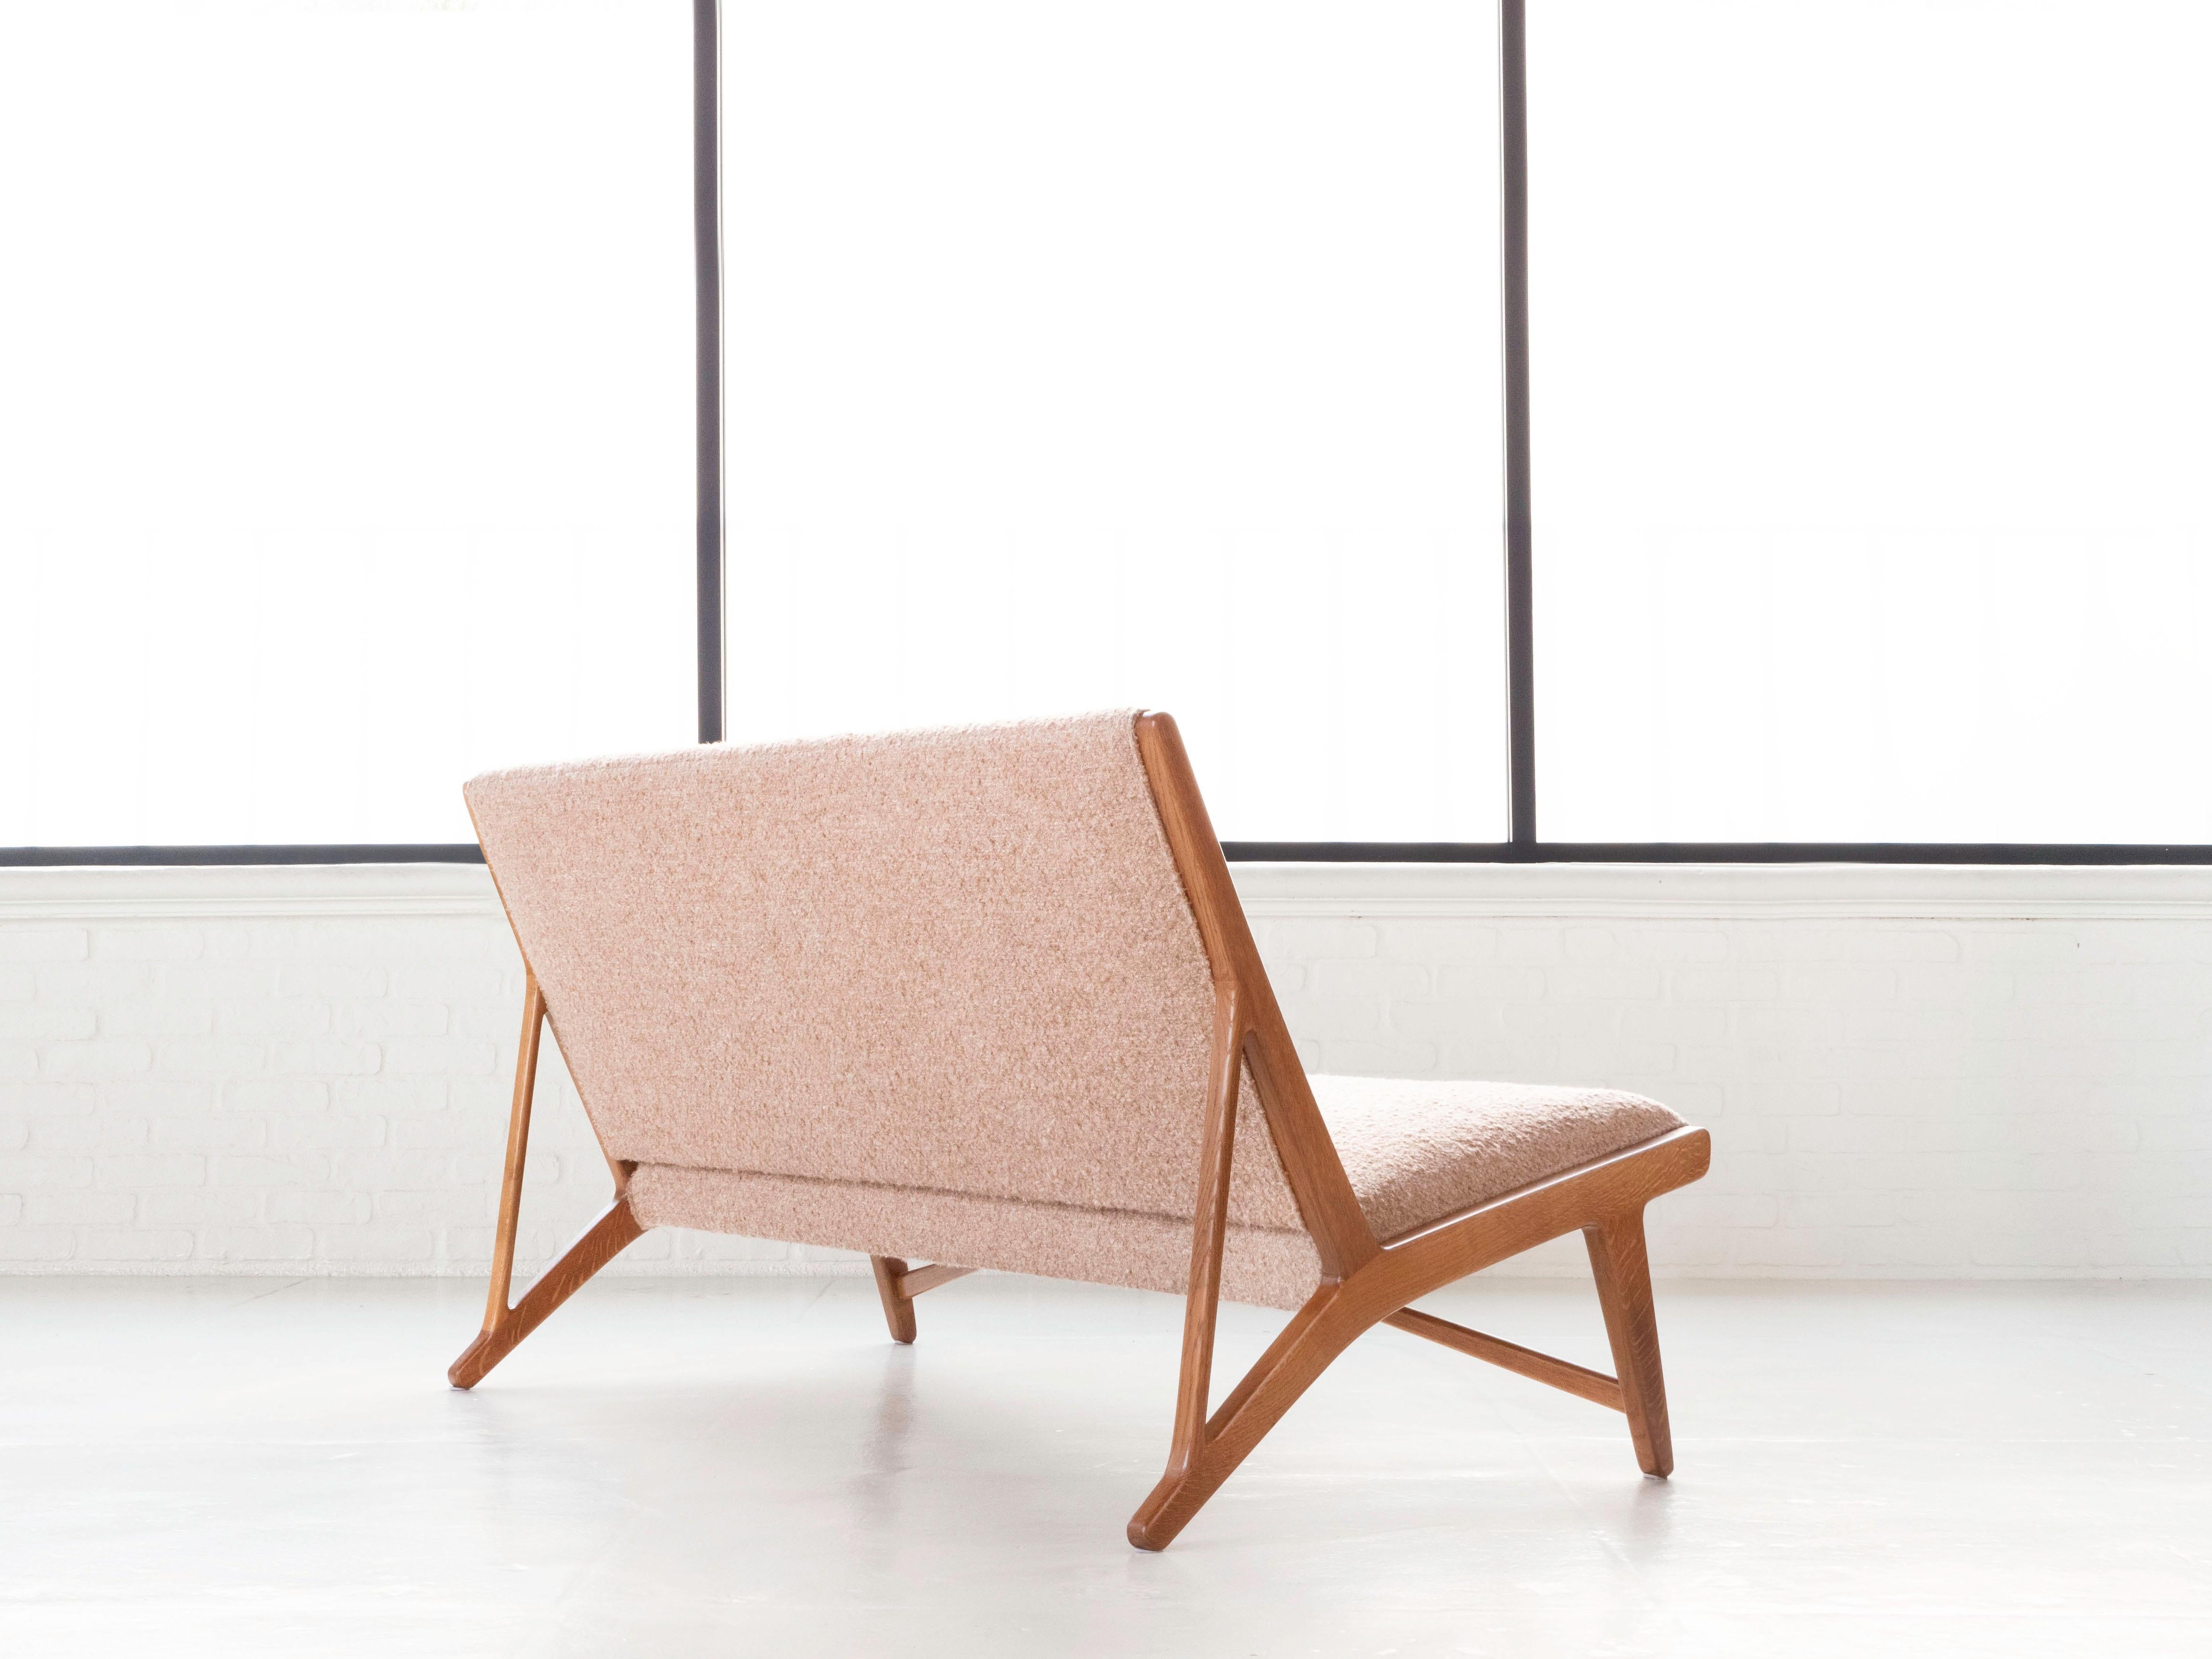 Pair of settees by designer Hans J. Wegner for cabinetmaker Johannes Hansen.  Model no. 